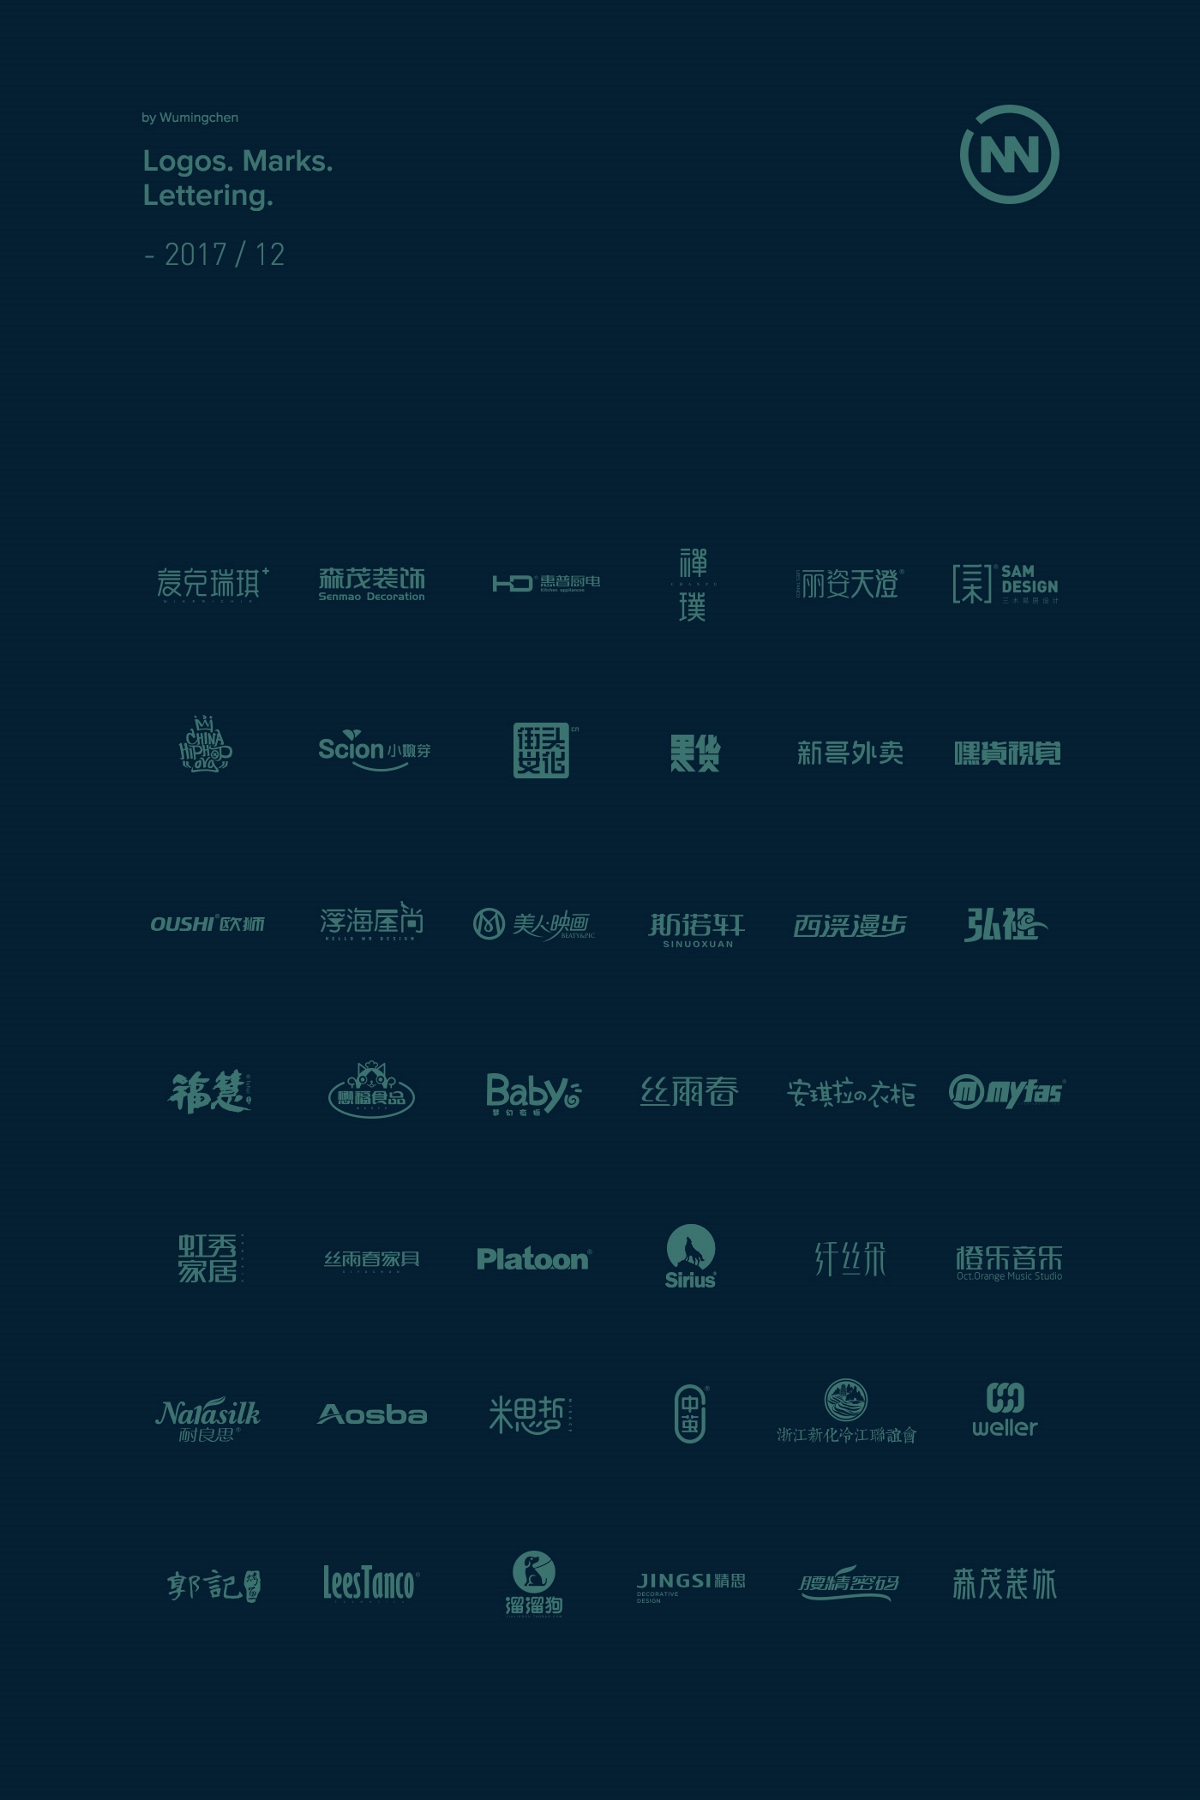 Logos. Marks. Lettering — 2017